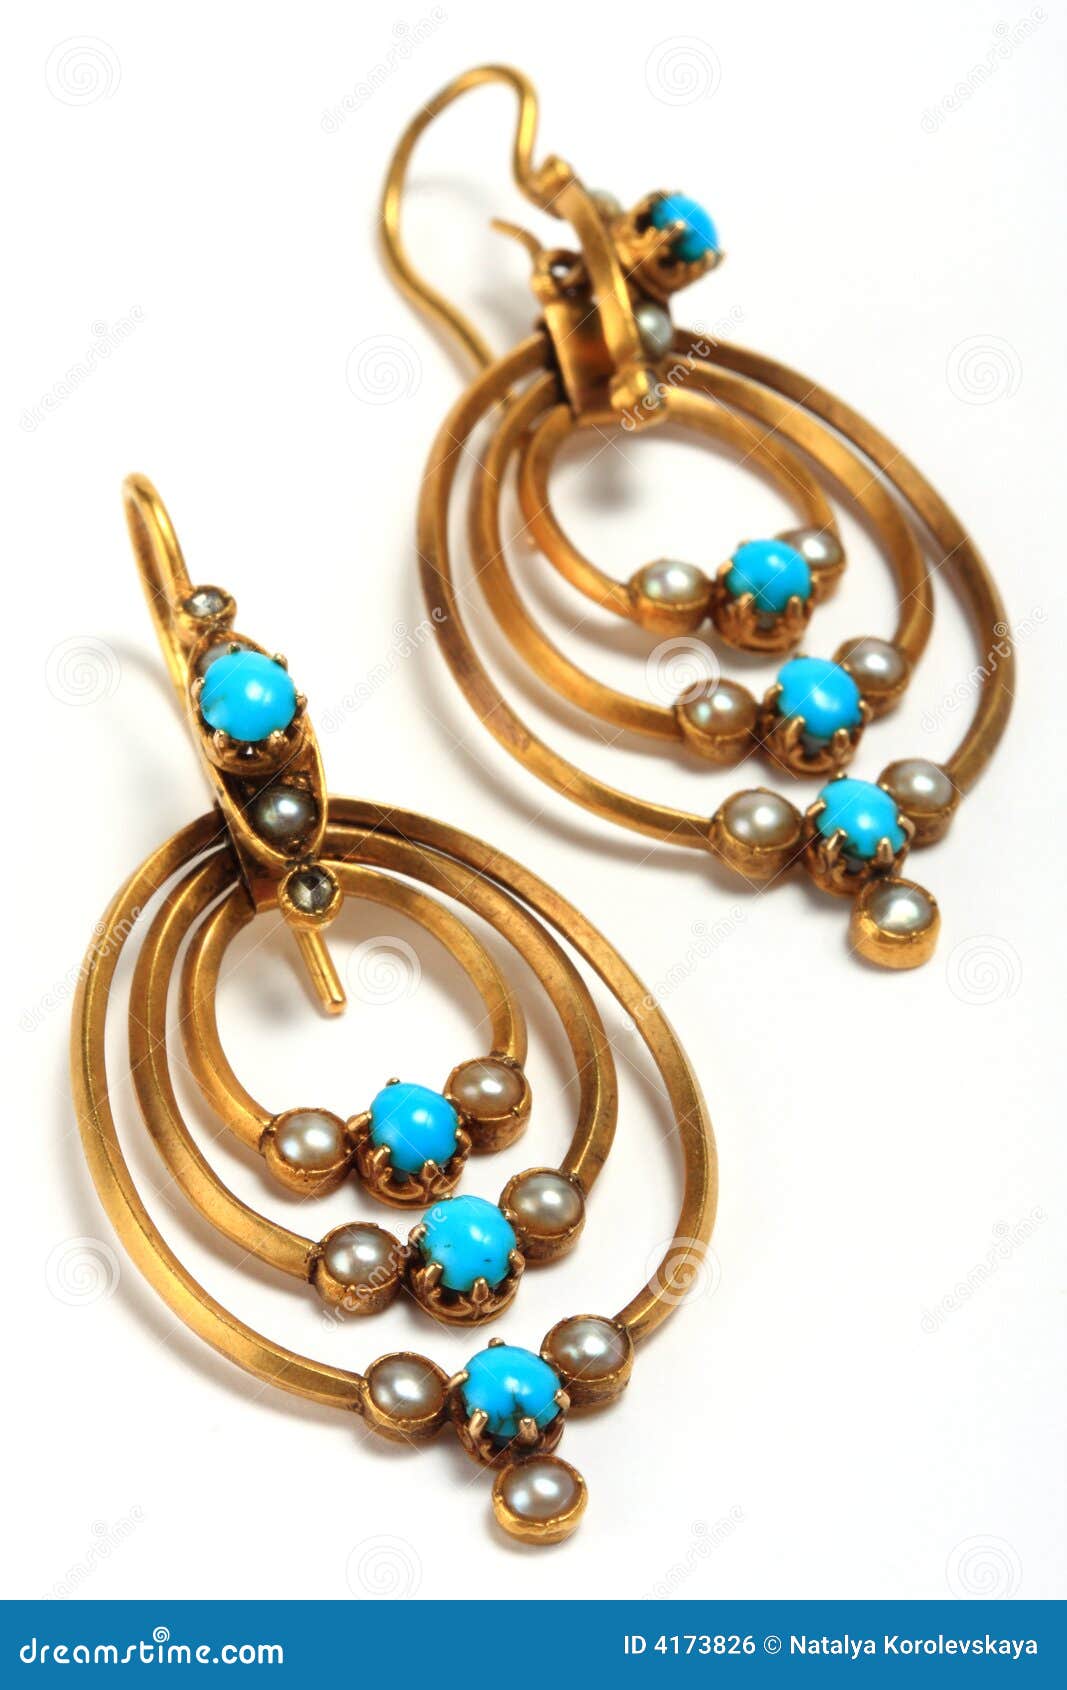 antic earrings, jewelry